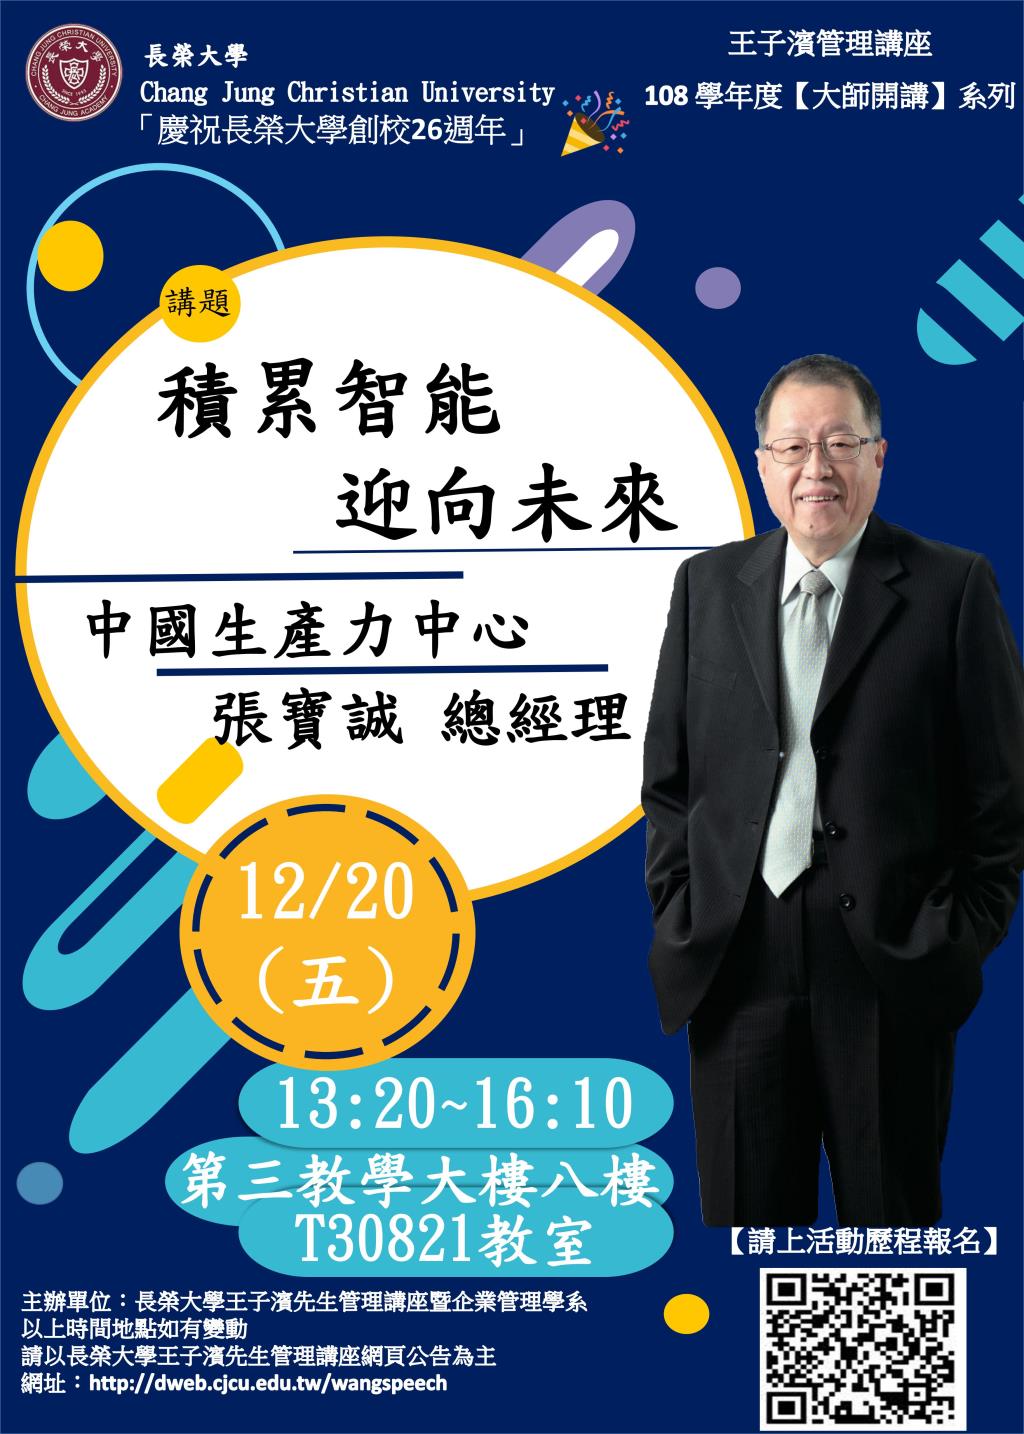 敬邀參加本週五下午(12/20)王子濱先生管理講---中國生產力中心 張寶誠總經理